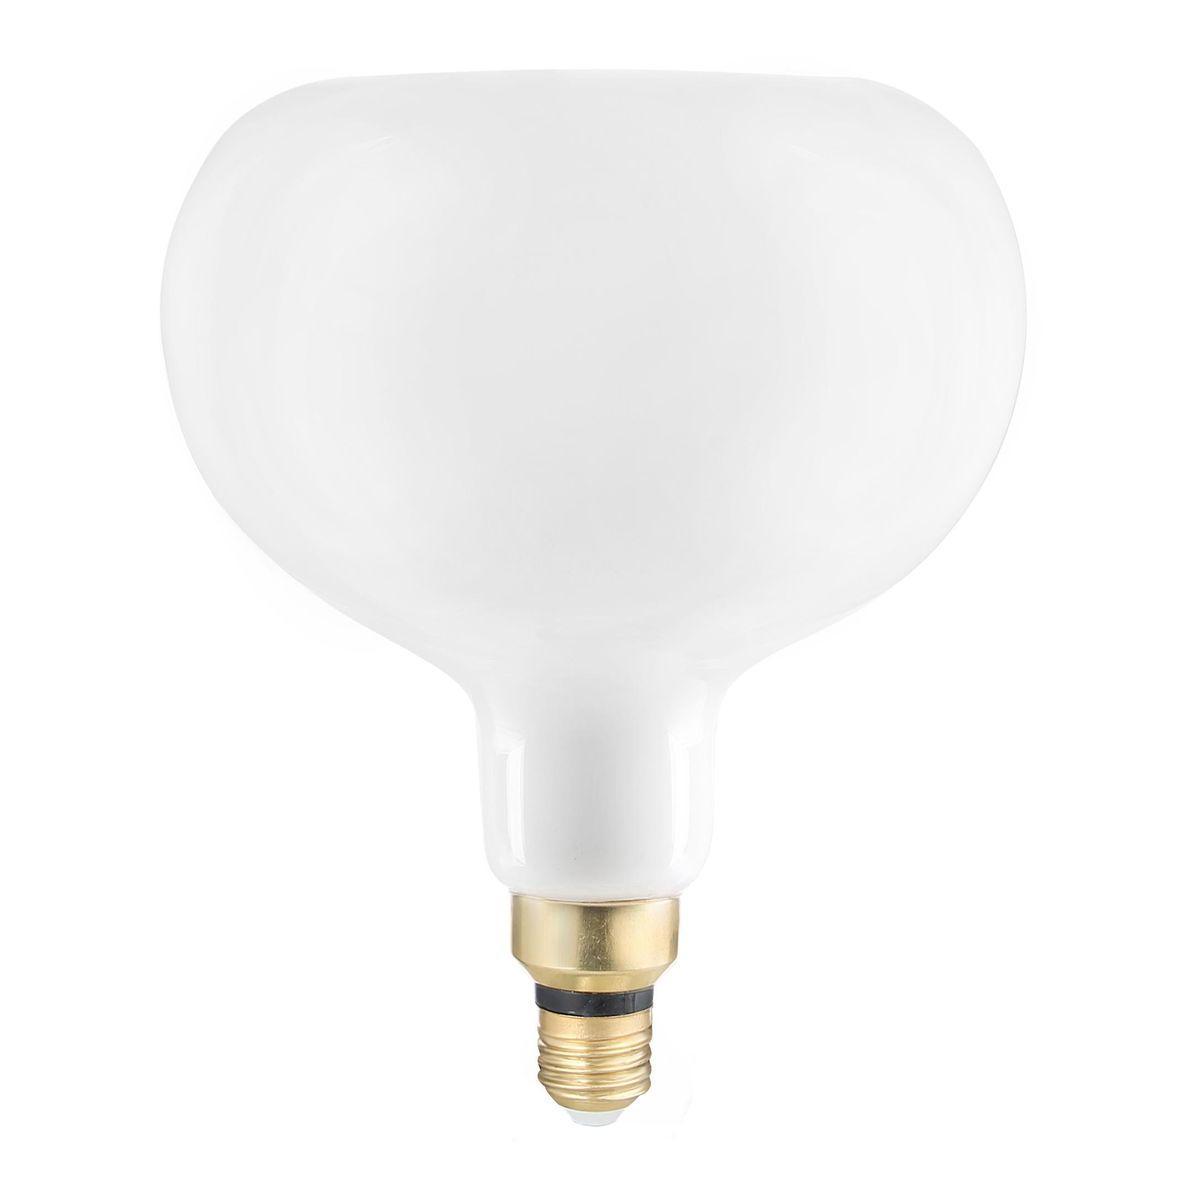 Gauss Лампа Filament А190 10W 890lm 4100К Е27 milky диммируемая LED